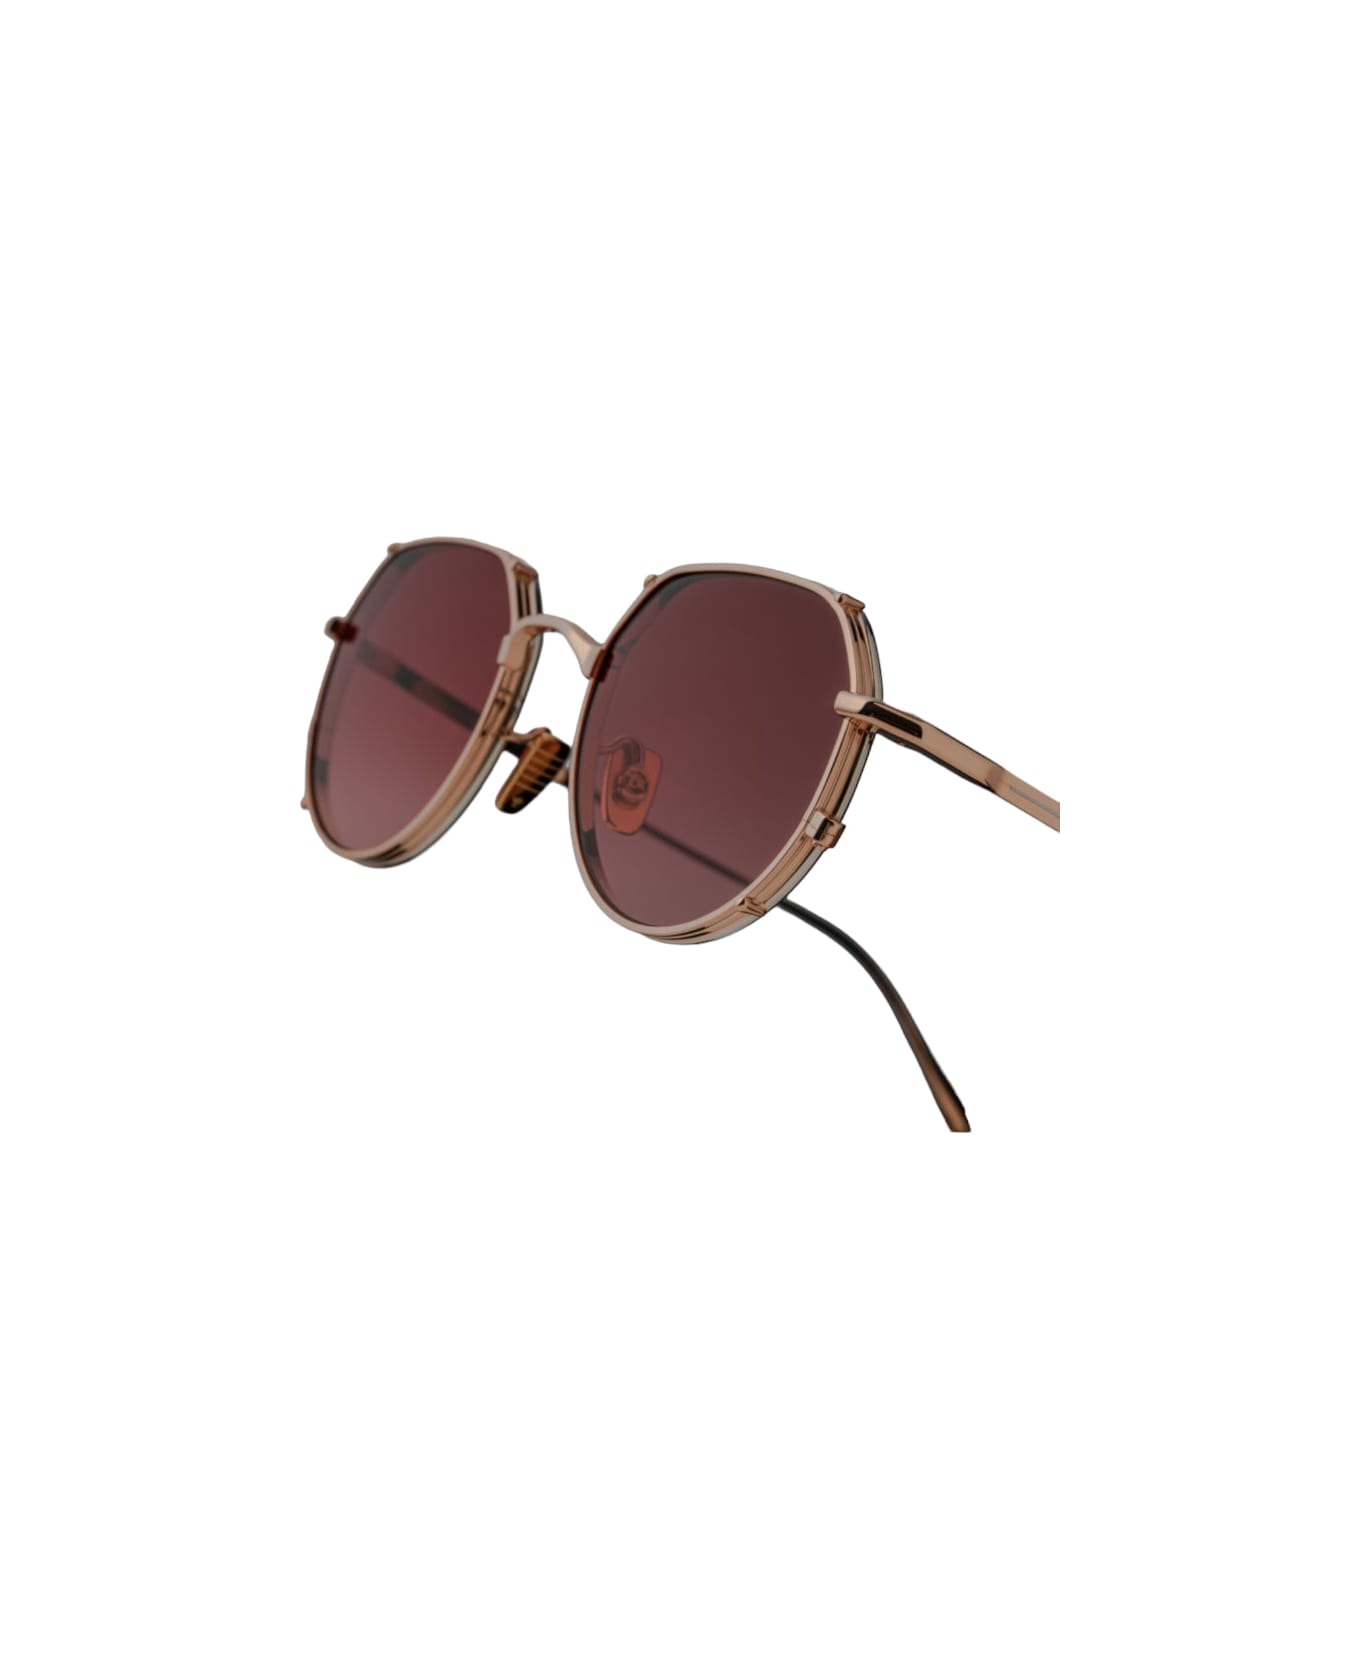 Givenchy Eyewear square-frame tortoiseshell-effect sunglasses BIG Hartana - Rose Gold Sunglasses